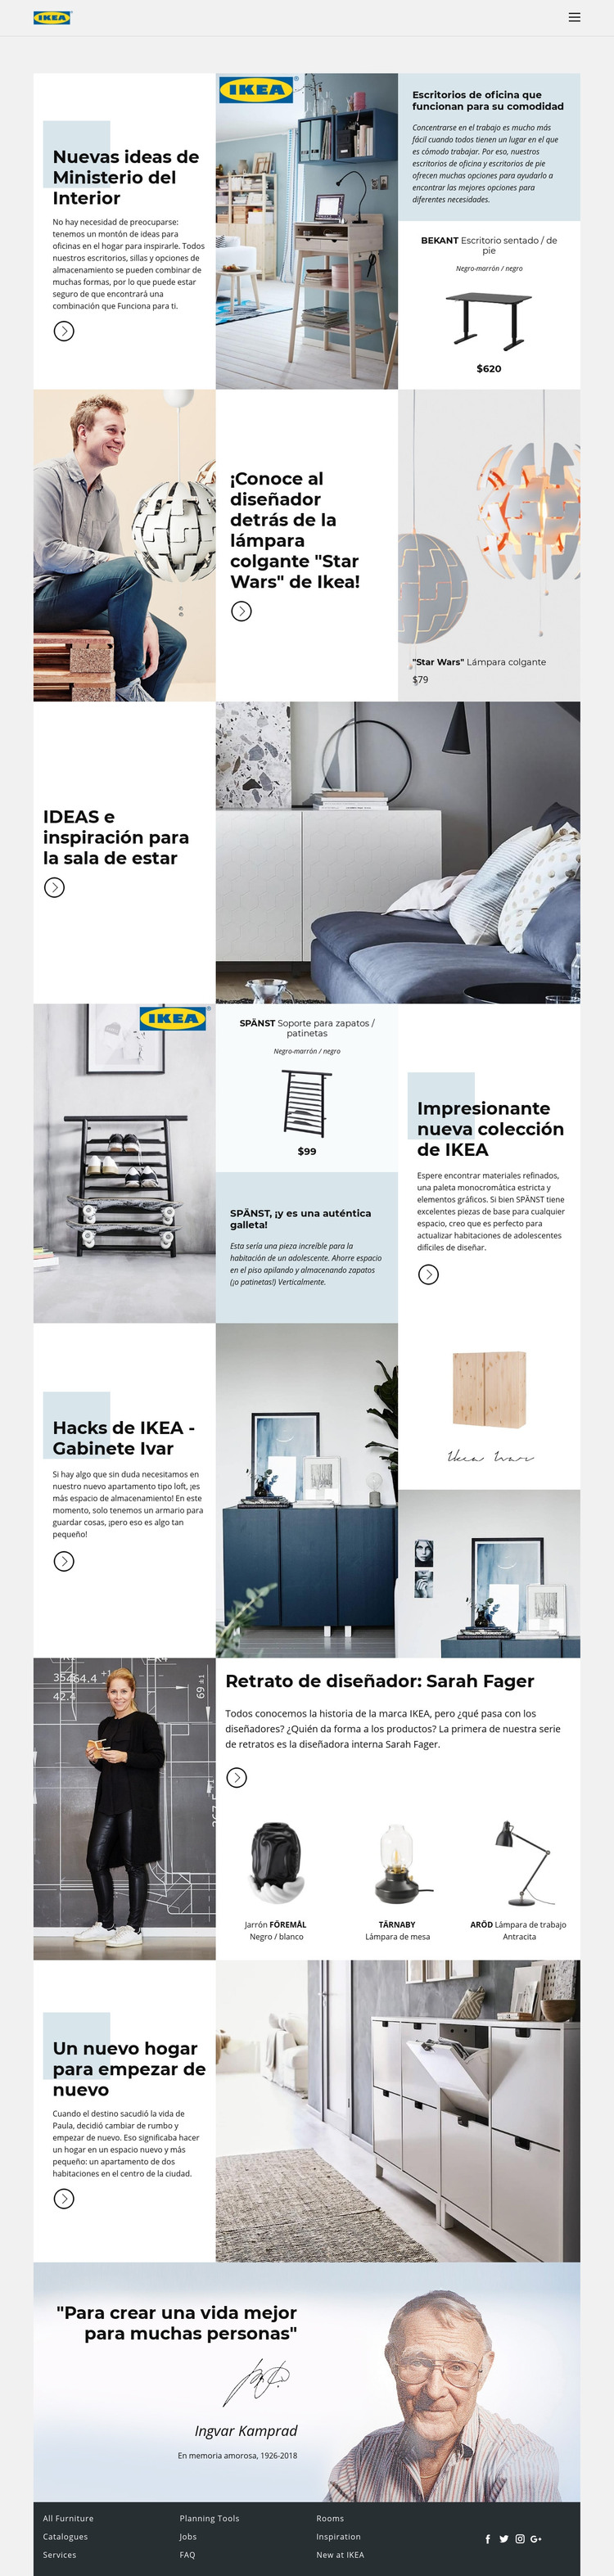 Inspiración de IKEA Plantilla HTML